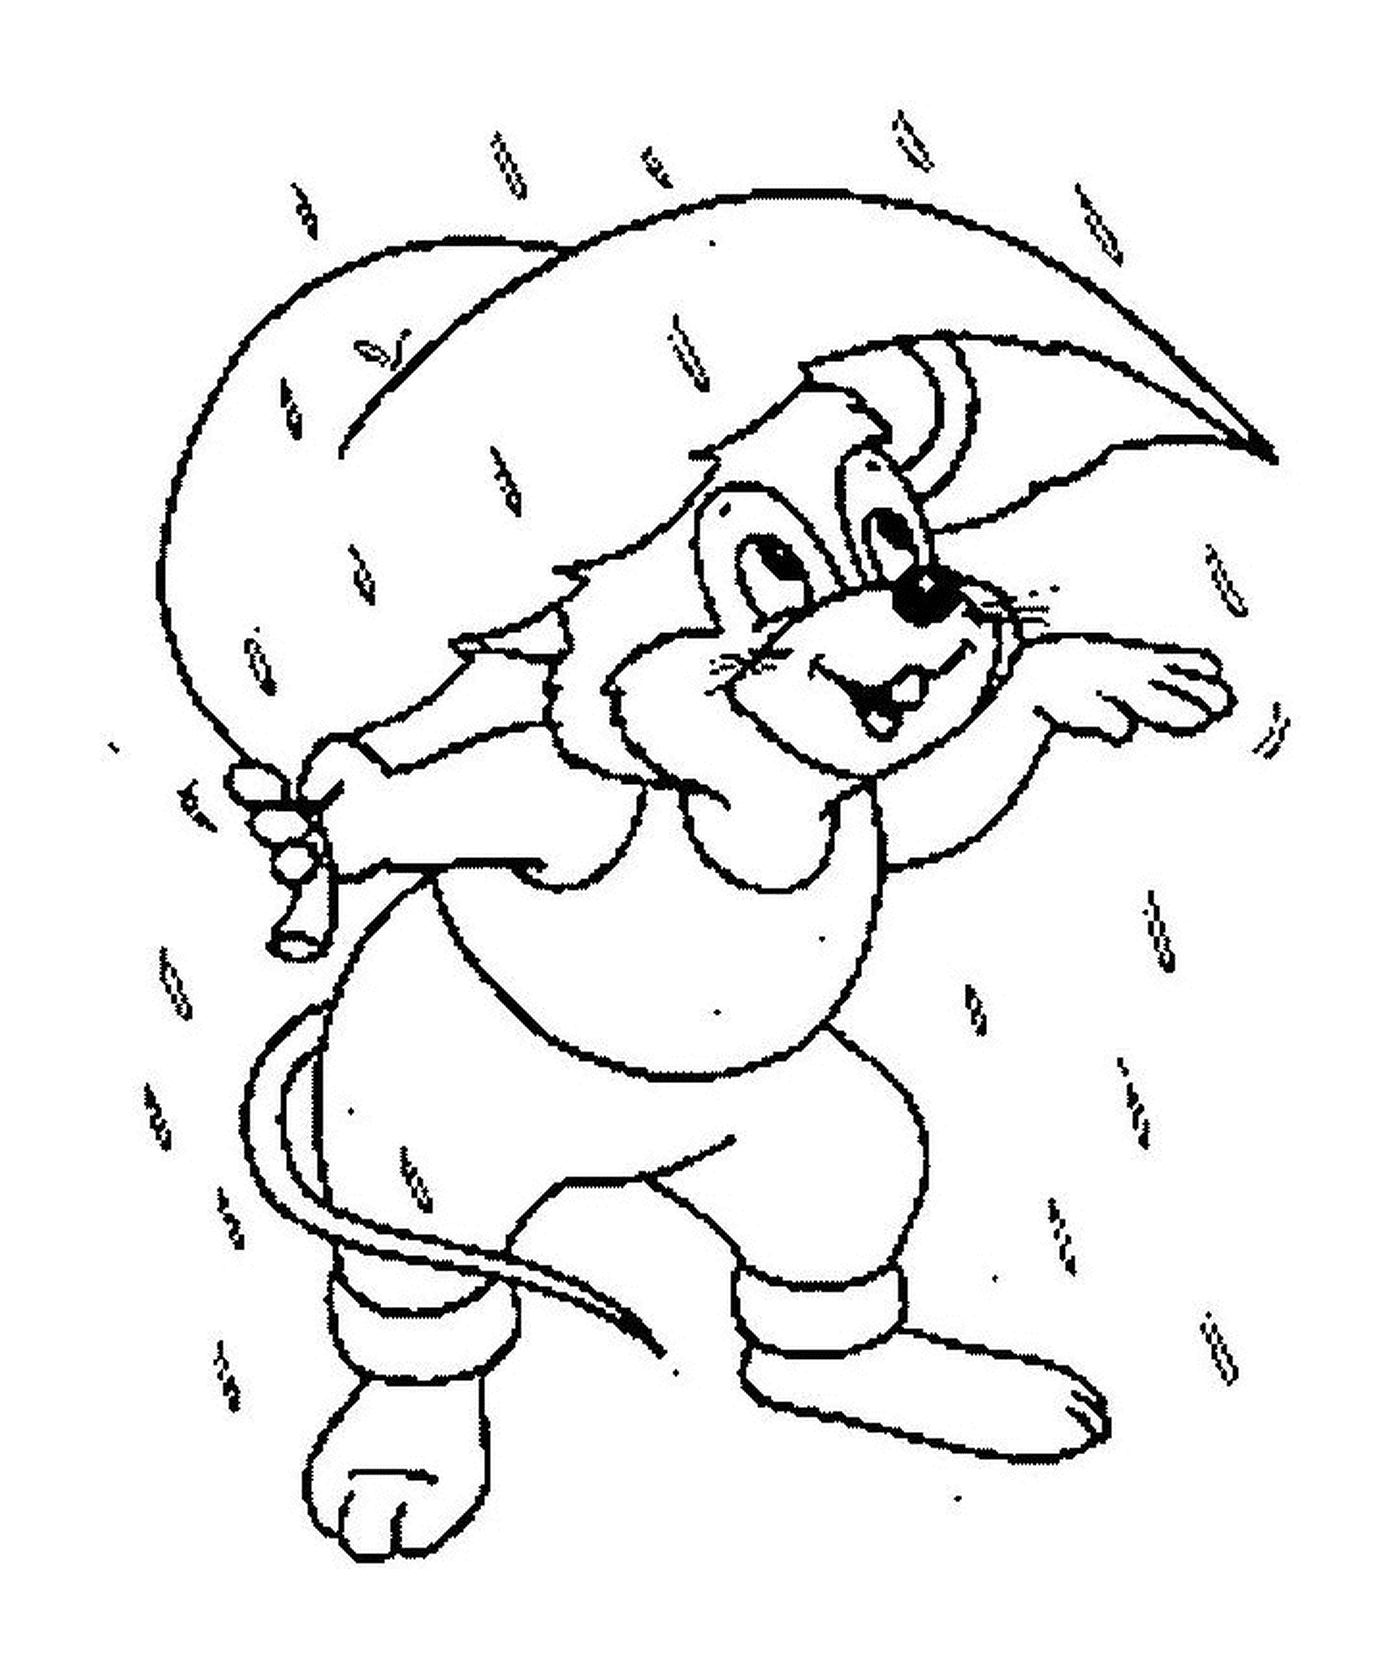  Un topo che si protegge dalla pioggia 